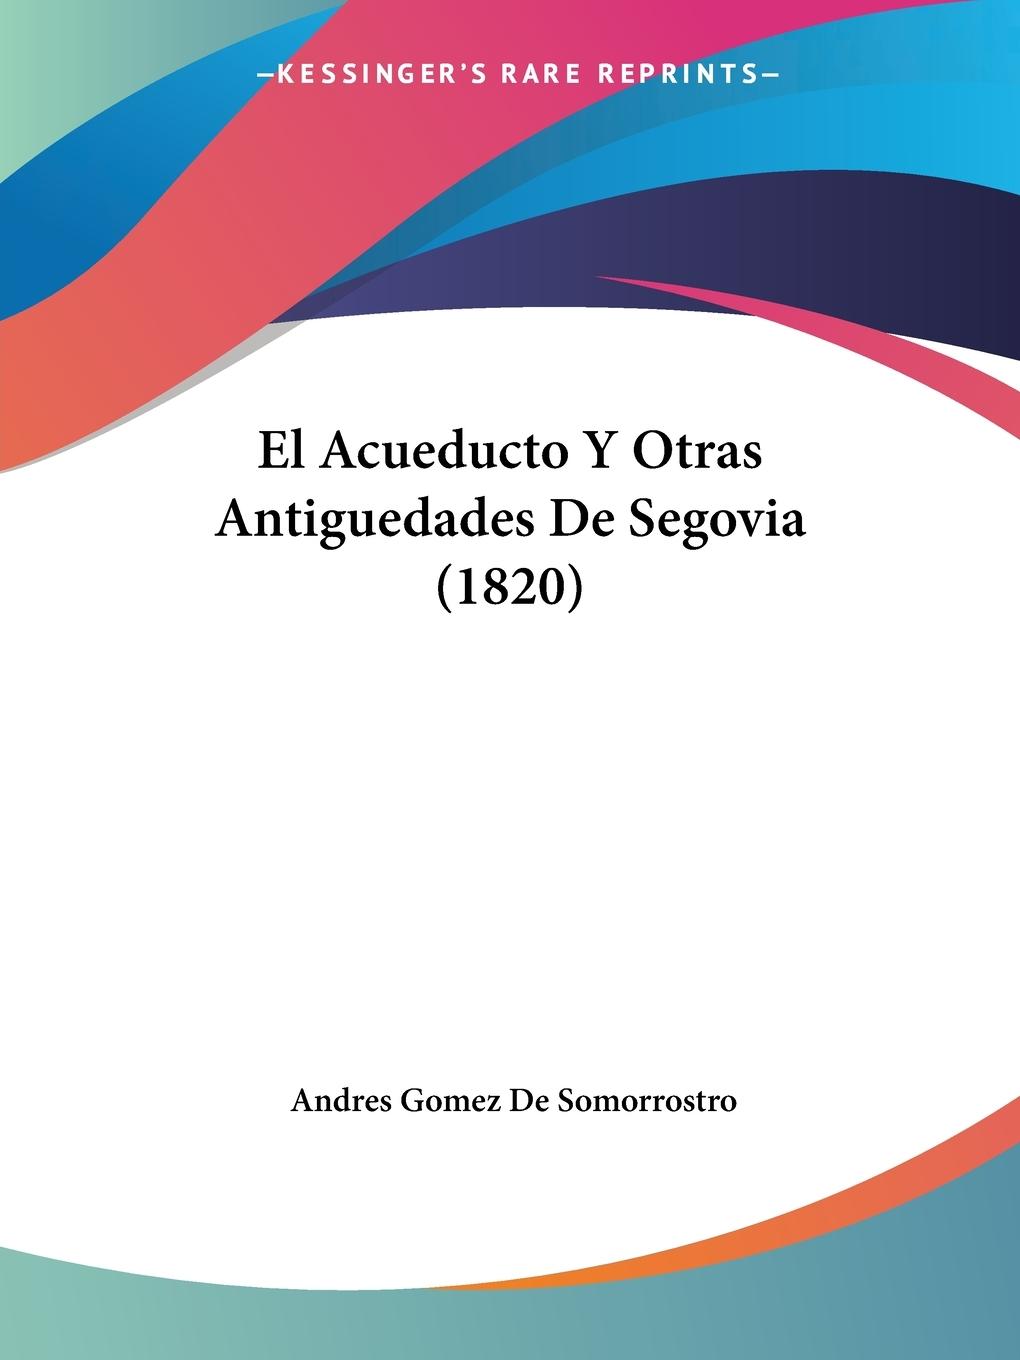 El Acueducto Y Otras Antiguedades De Segovia (1820)